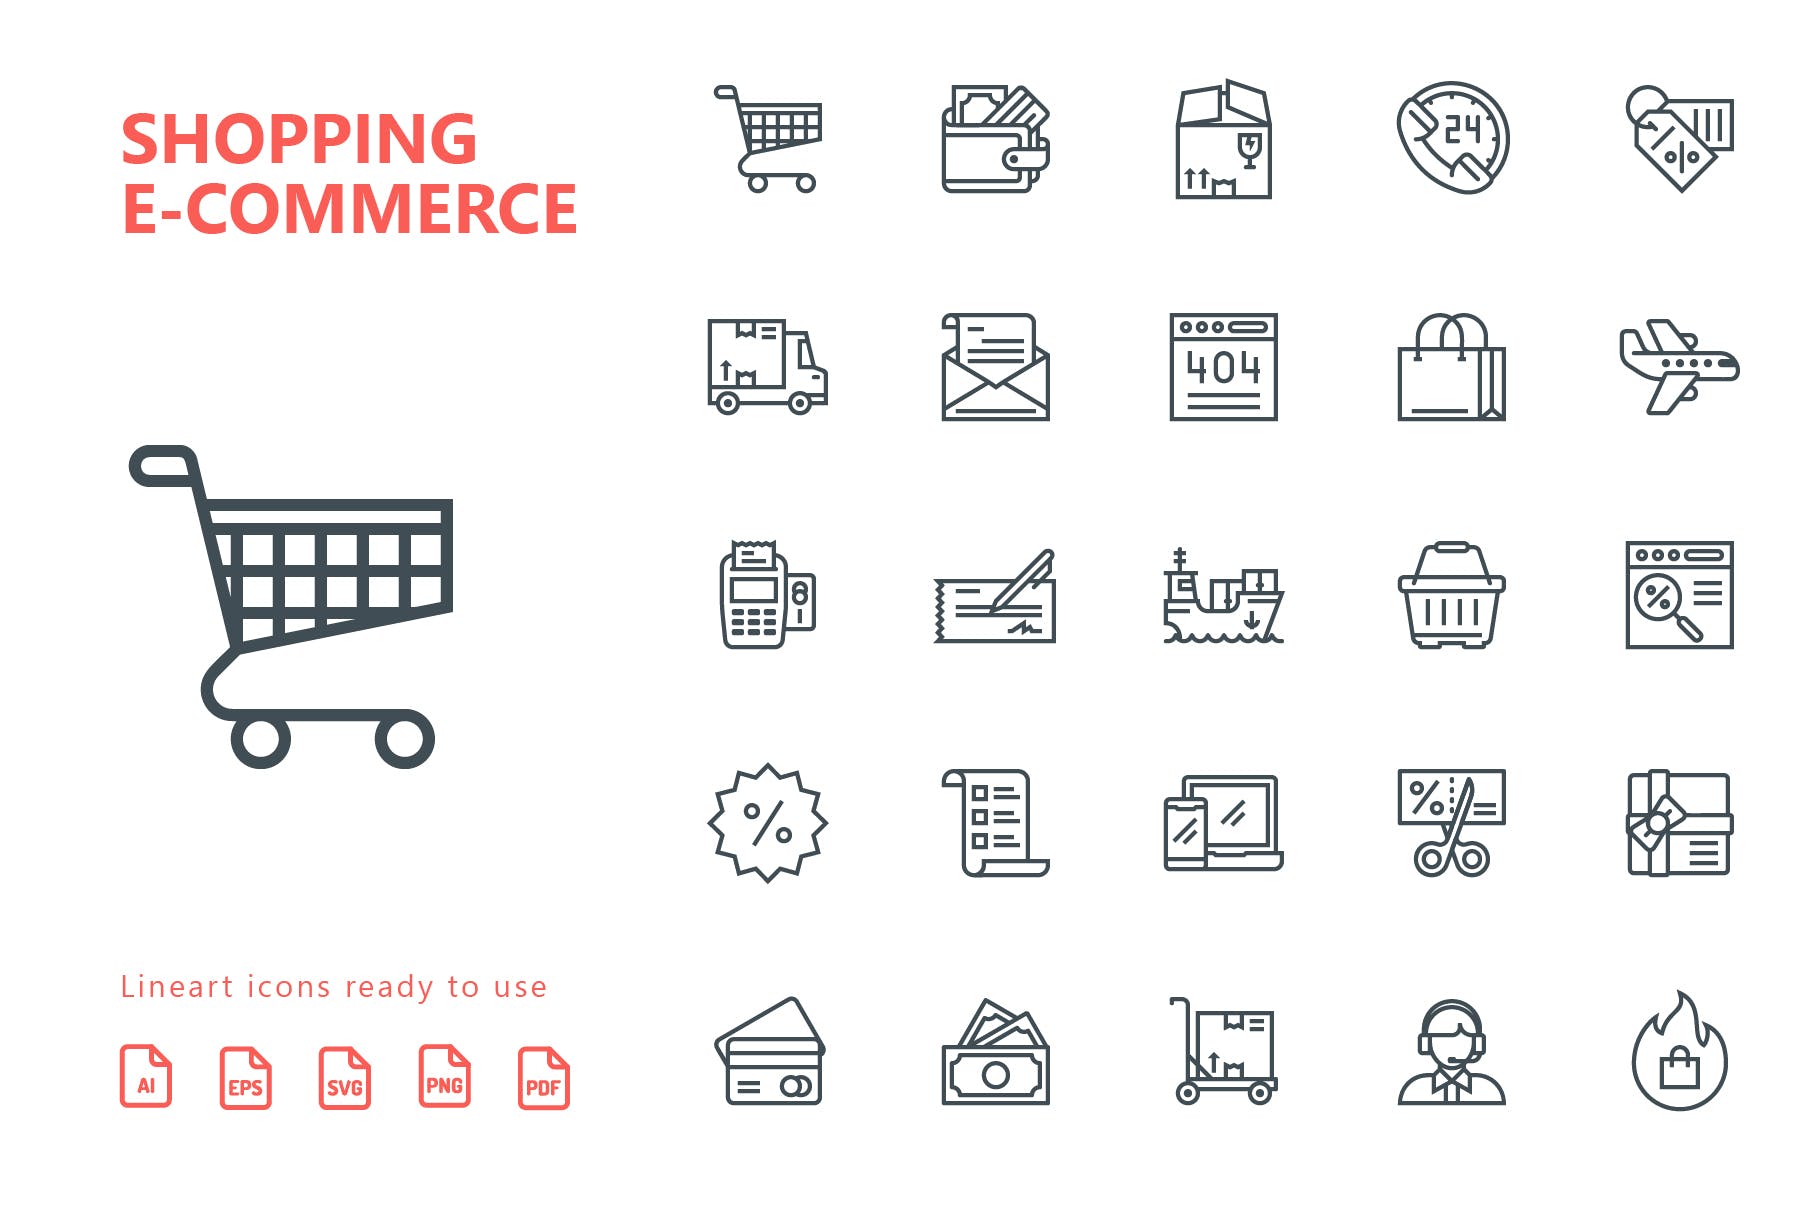 25枚网上购物电子商务矢量线性蚂蚁素材精选图标v1 Shopping E-Commerce Line Icons插图(1)